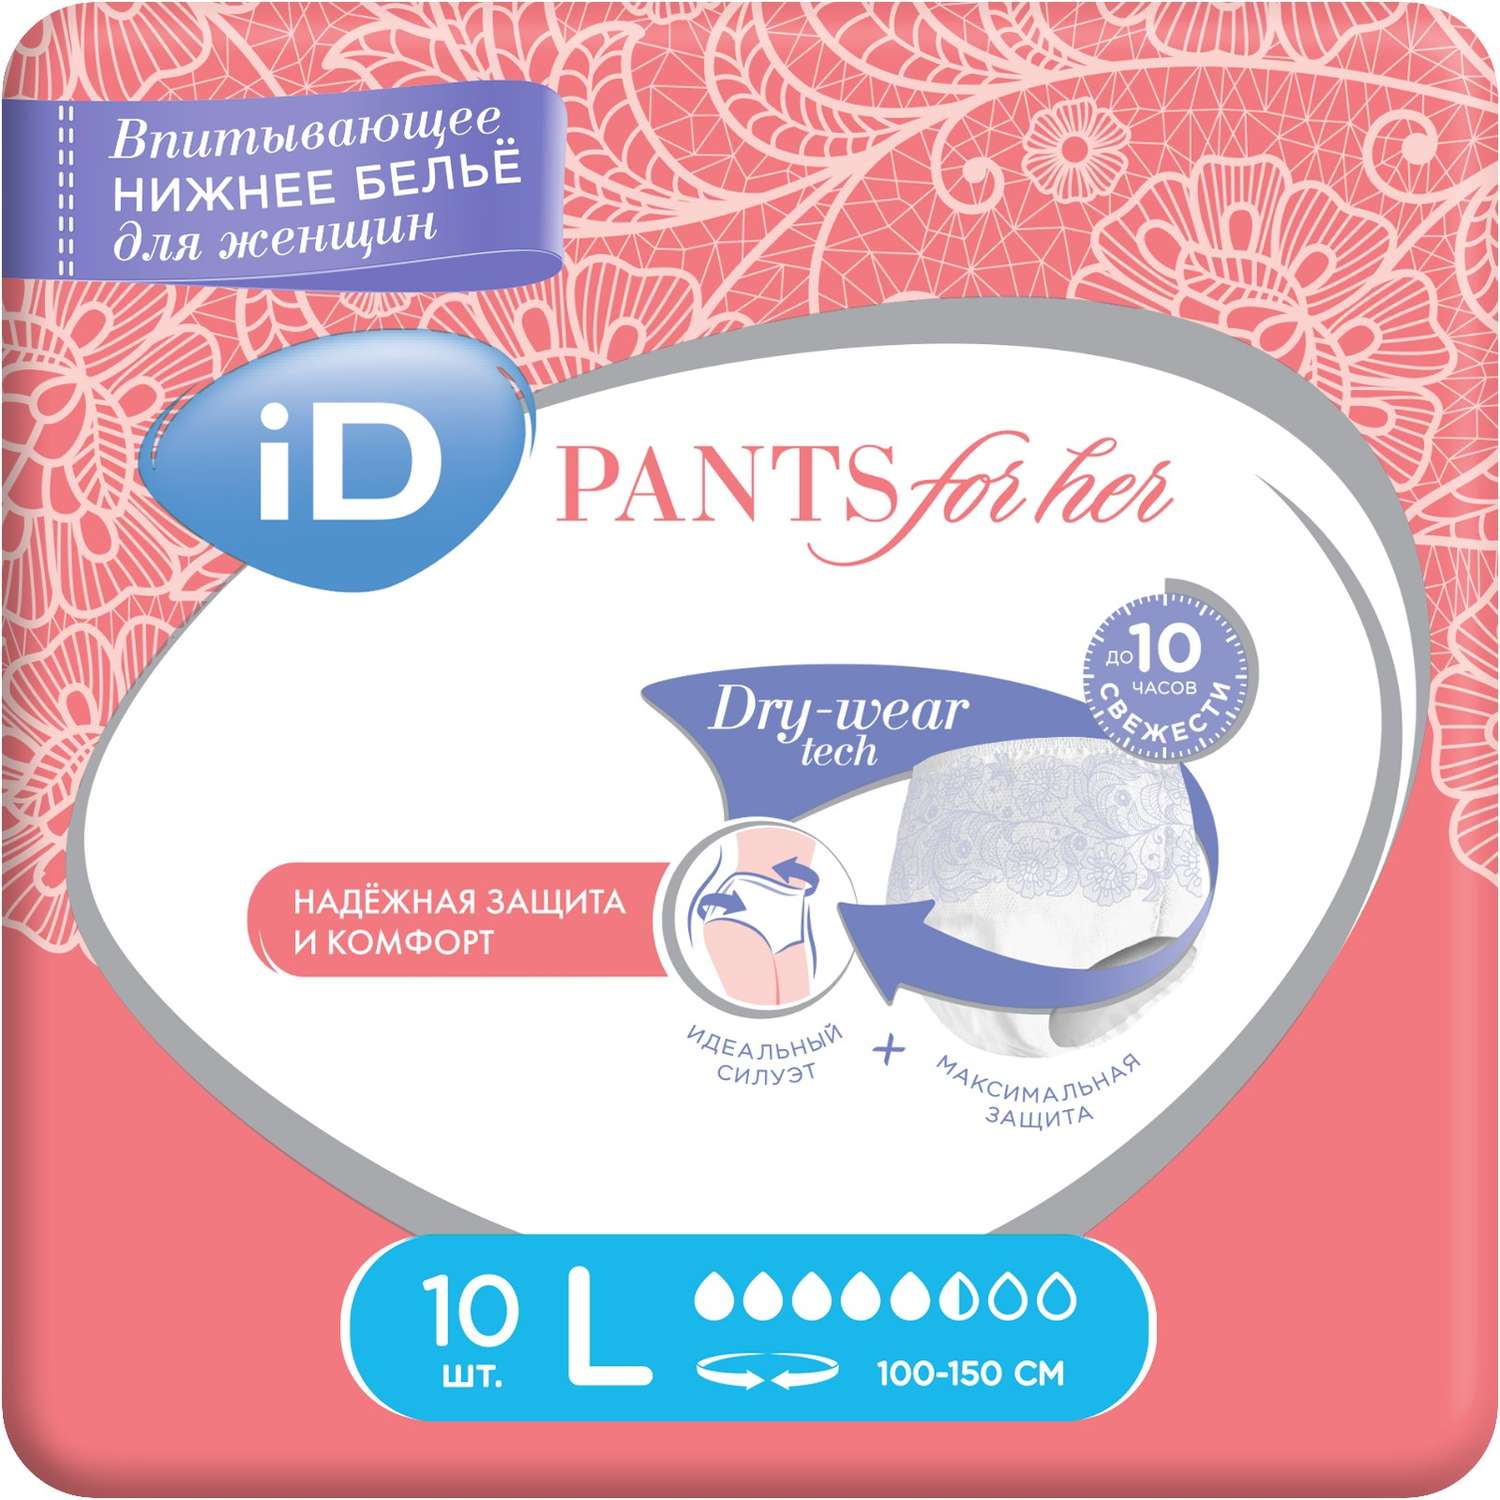 Трусы впитывающие для женщин iD PANTS For Her L 10 шт. - фото 1